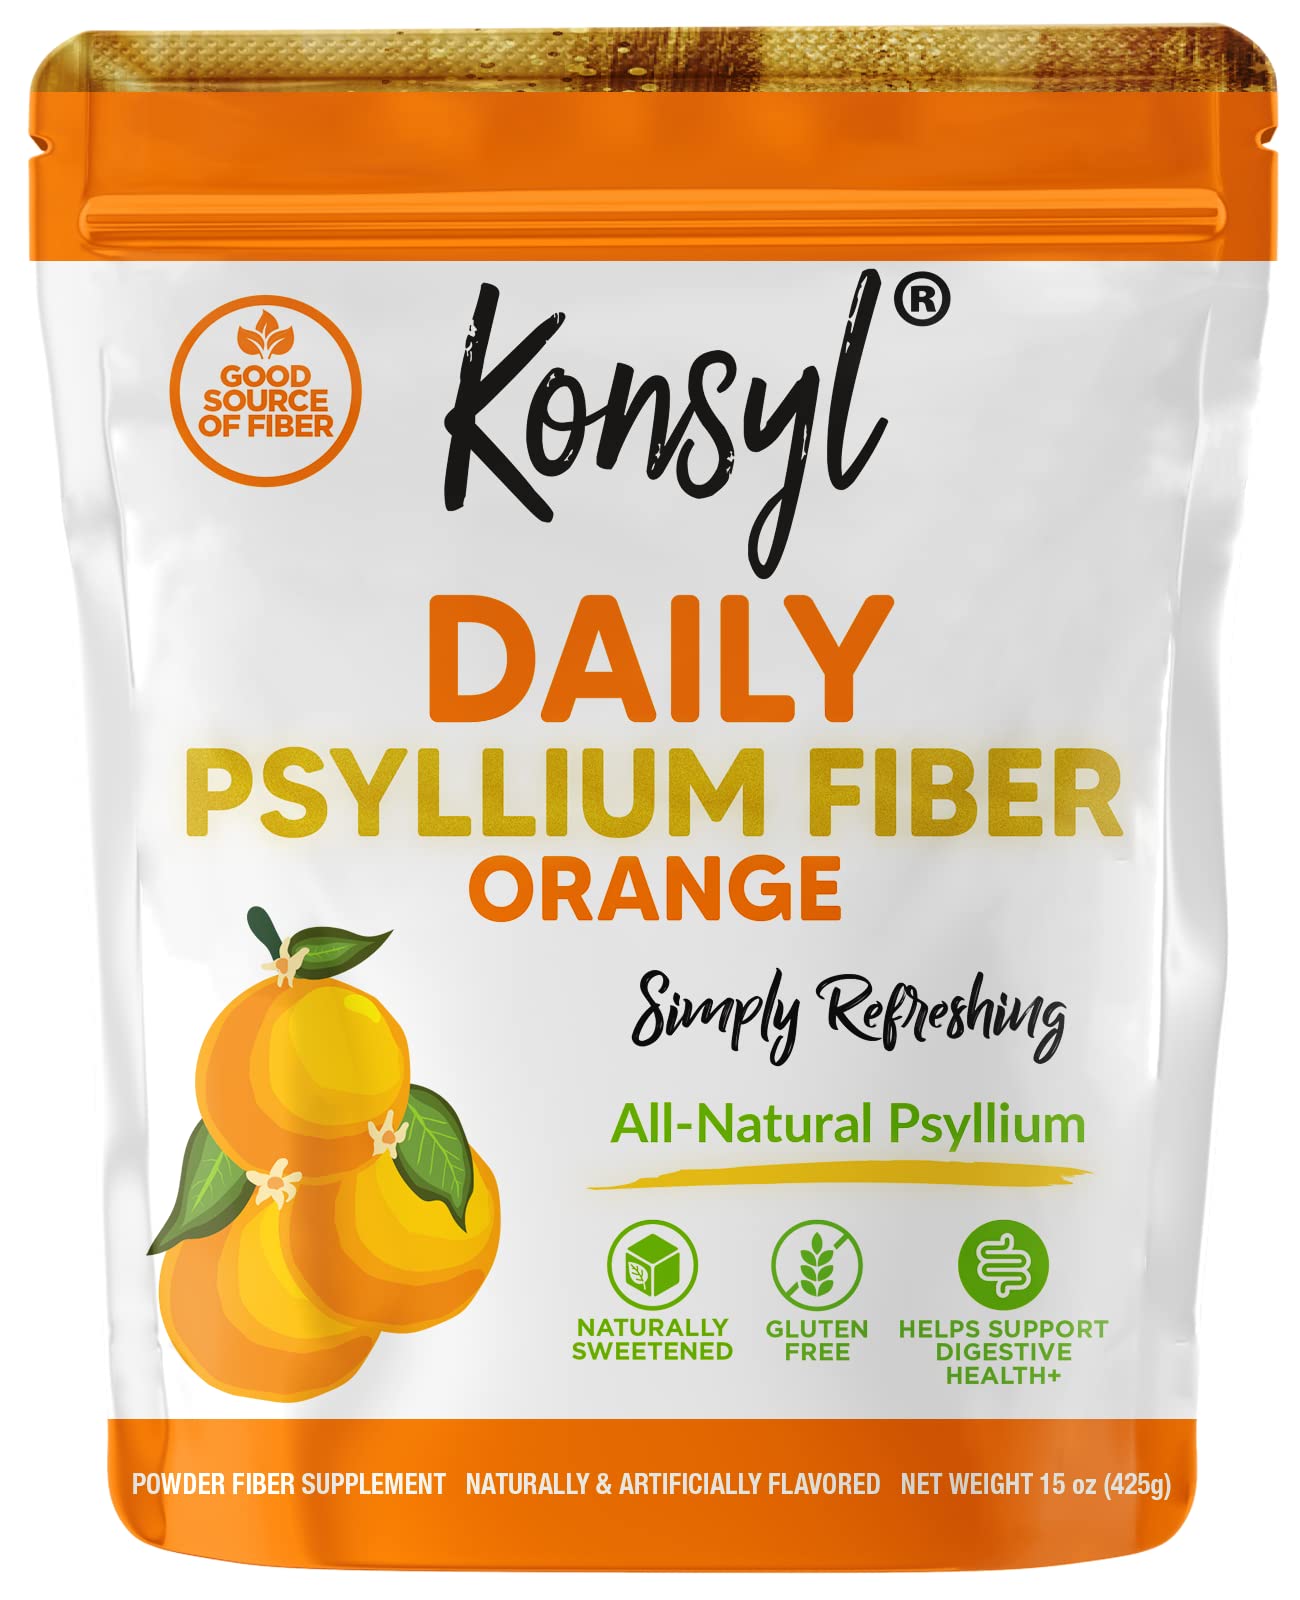 Konsyl Daily Psyllium Fiber Orange